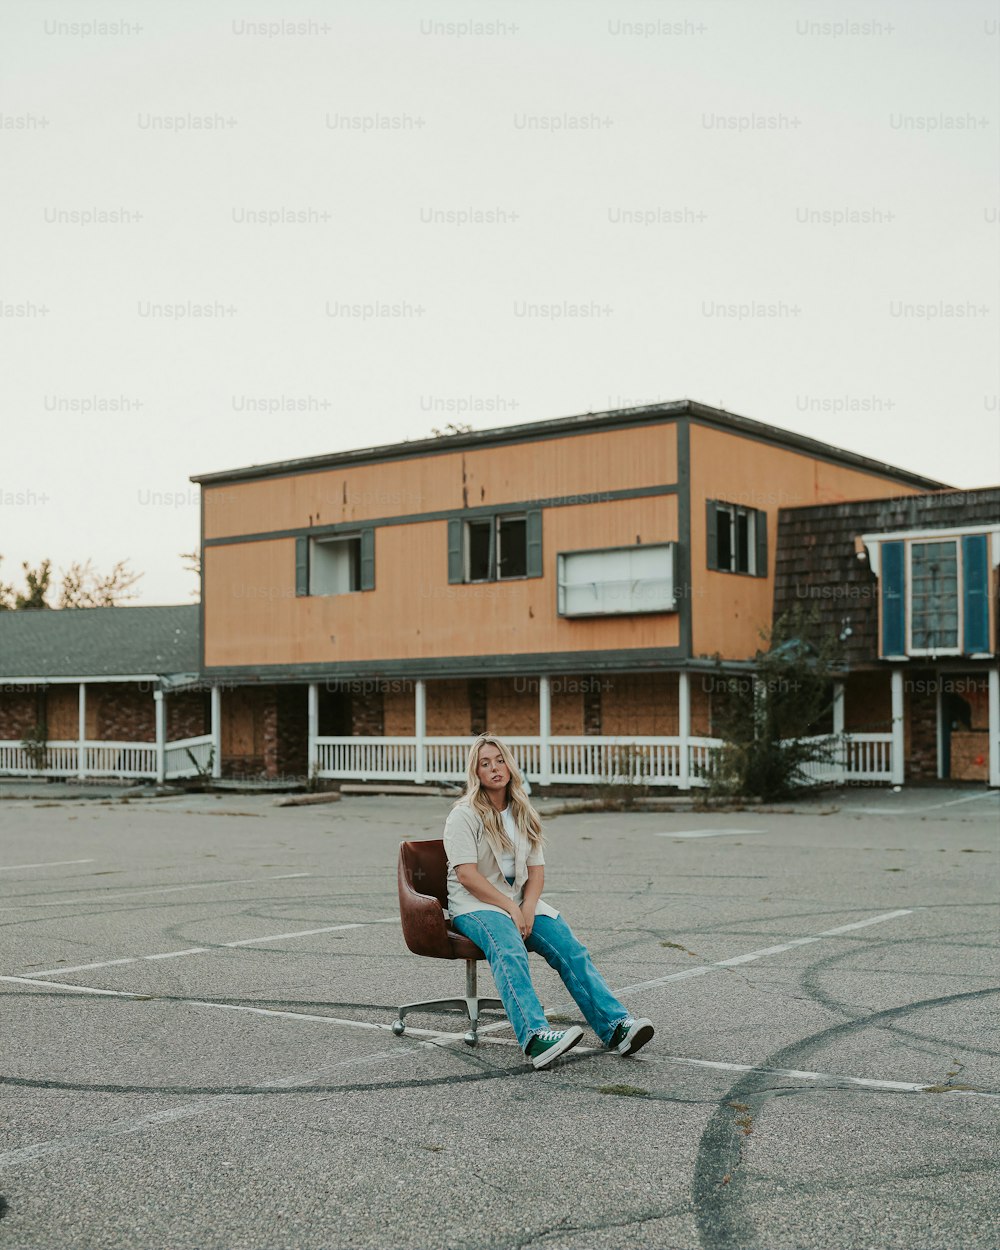 Eine Frau, die auf einem Stuhl auf einem Parkplatz sitzt